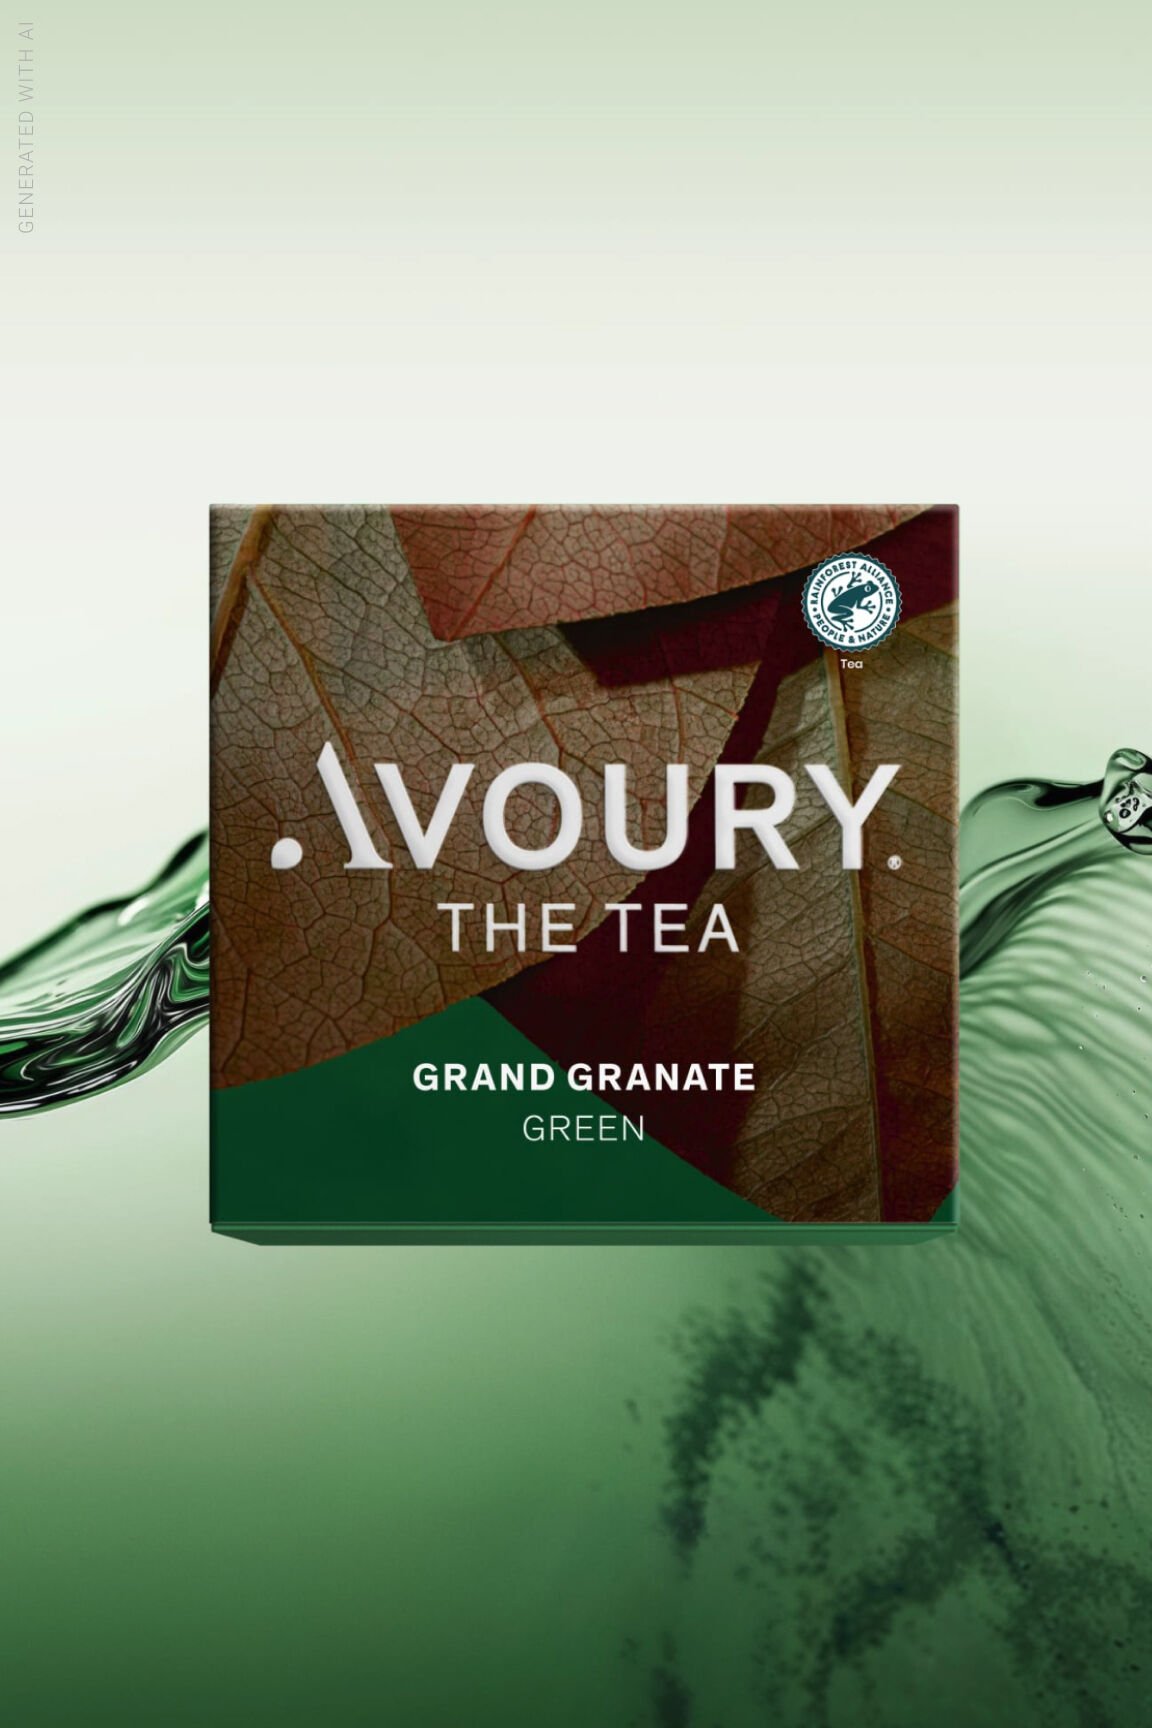 Tea packaging of Grand Granate